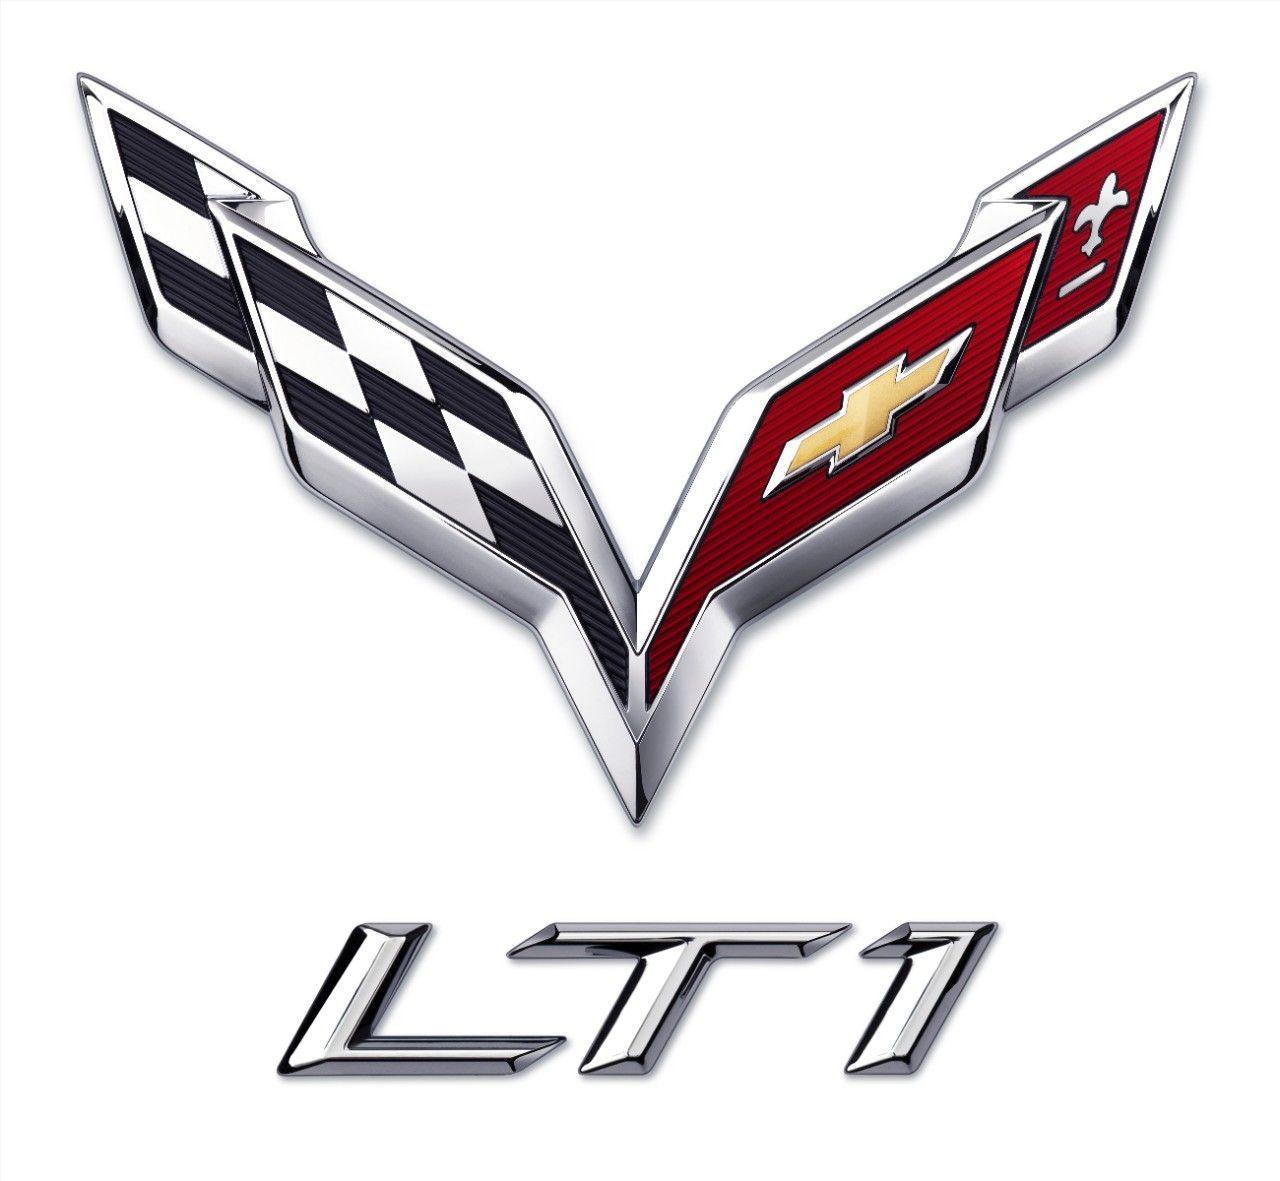 Chevy Corvette Stingray Logo - The all new 2014 C7 Corvette LT1 Engine logo. Corvette